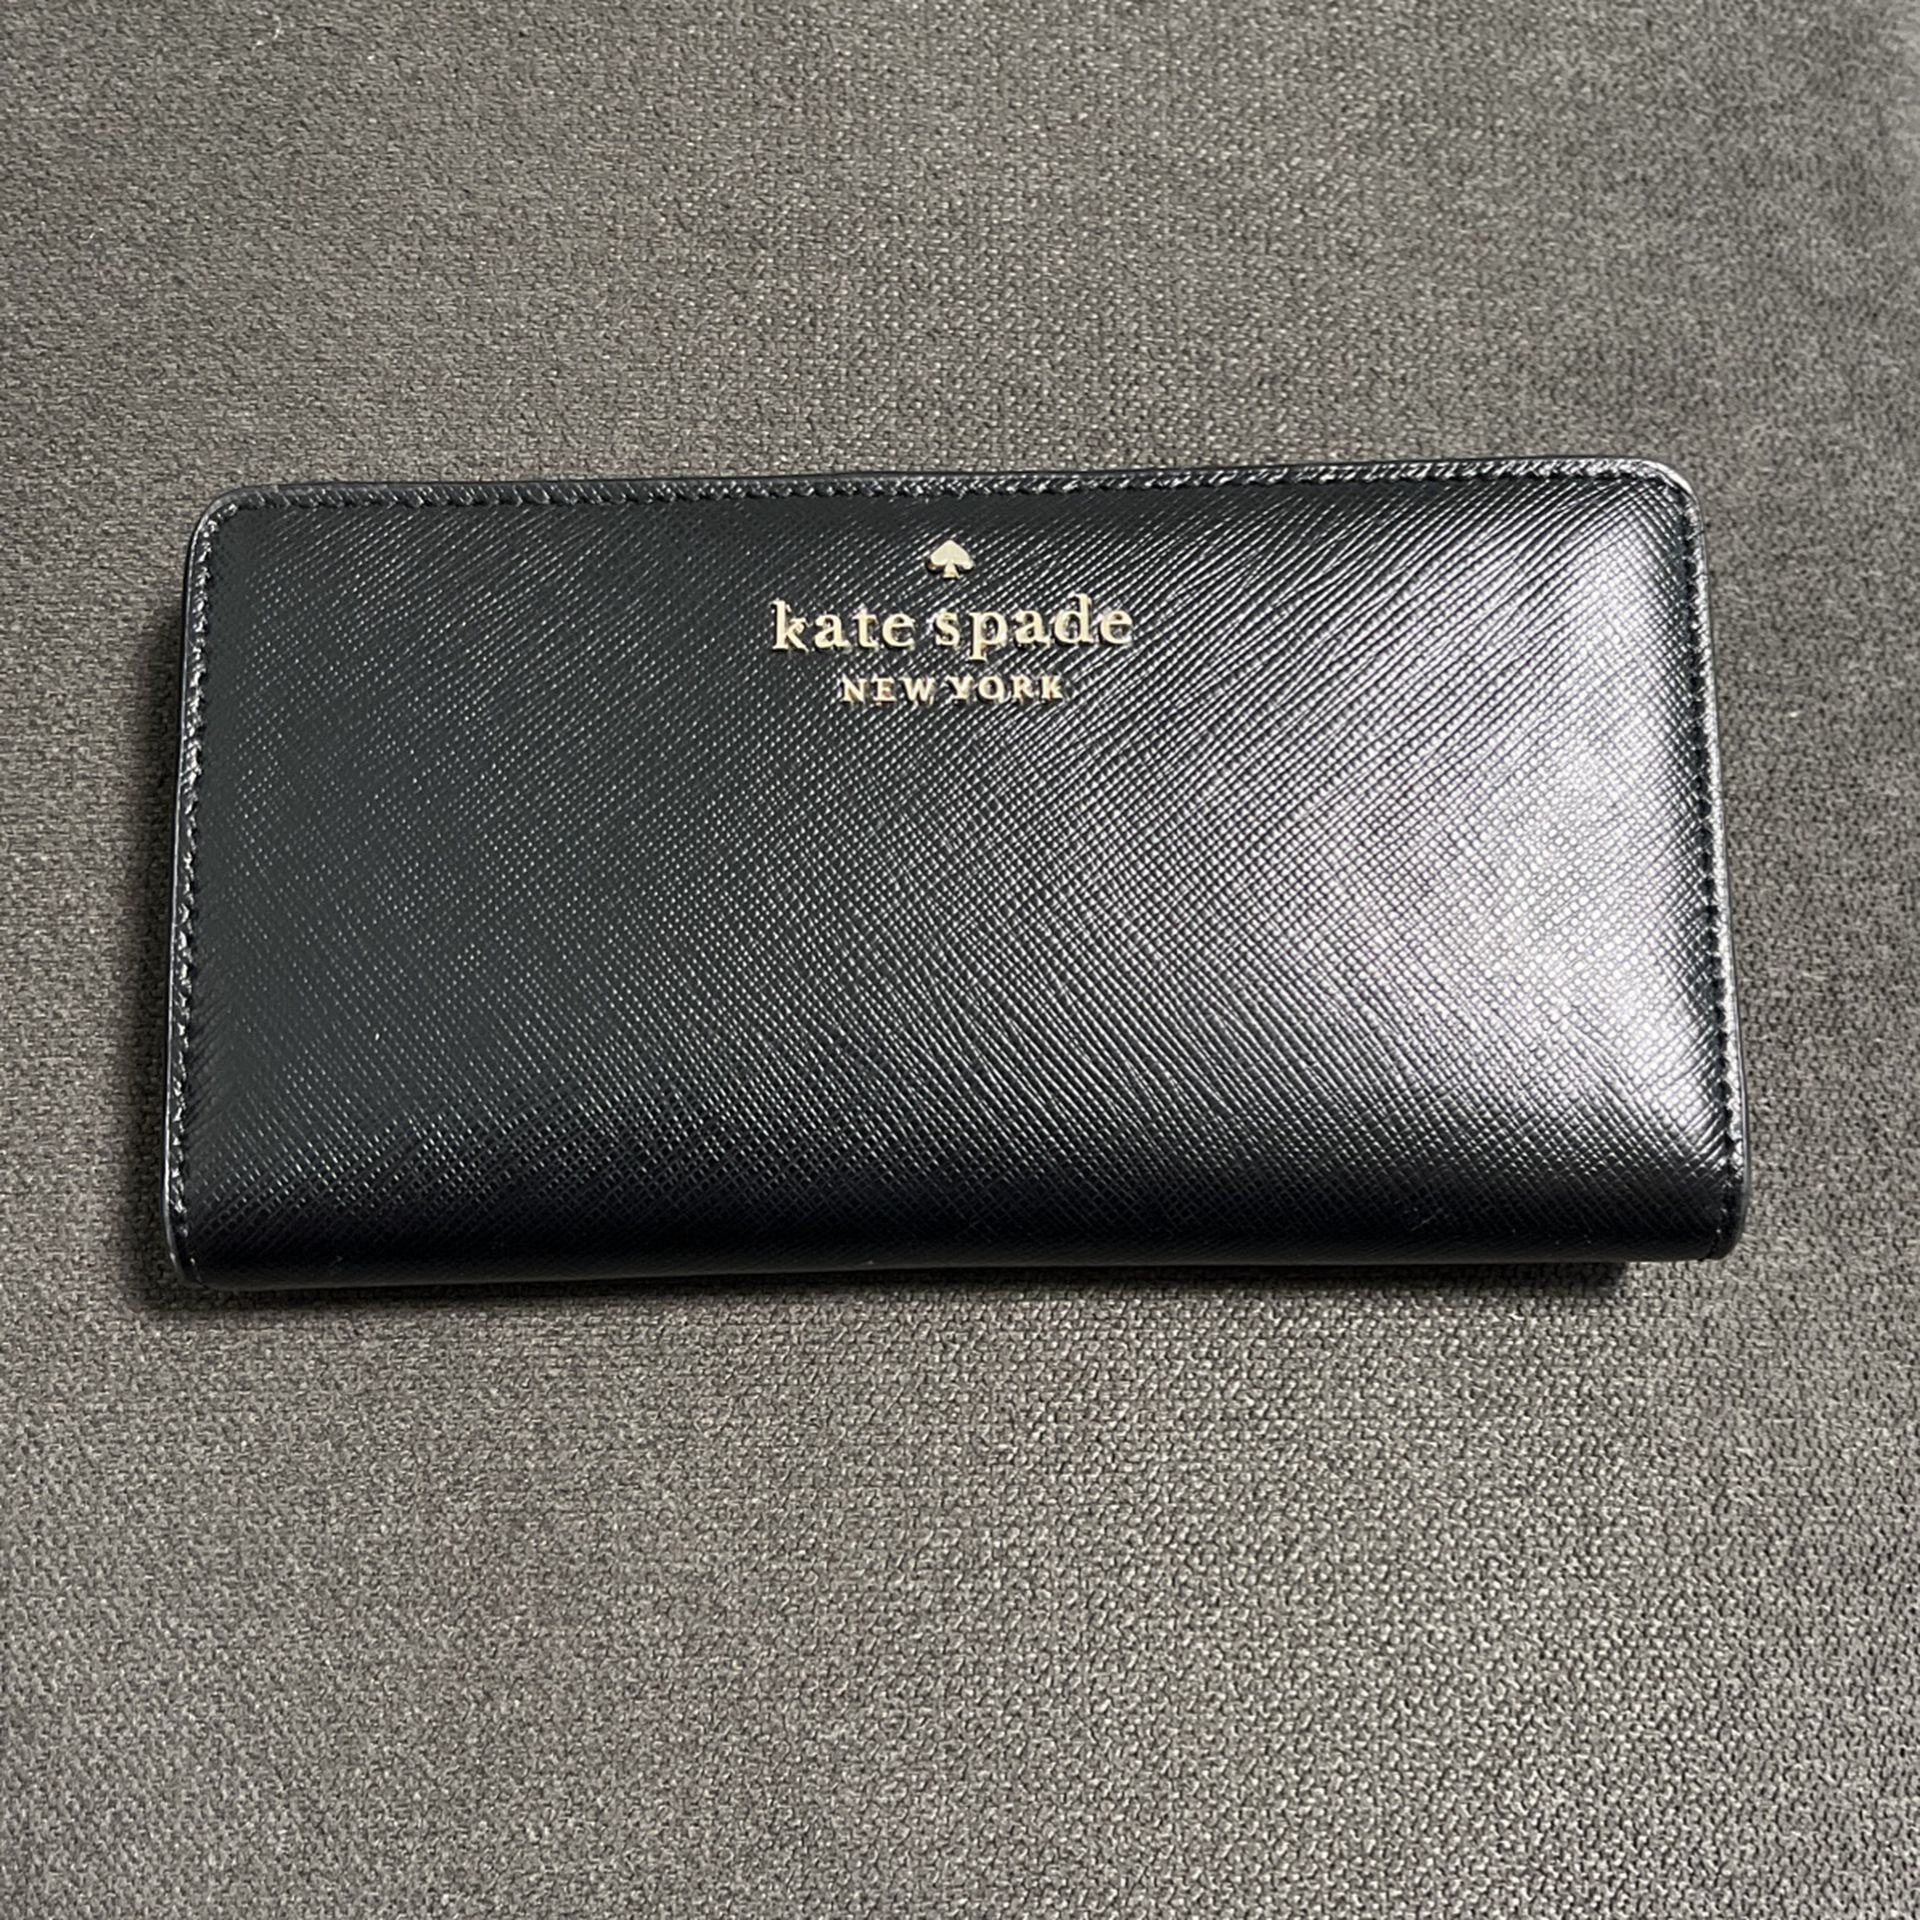 Kate spade Wallet